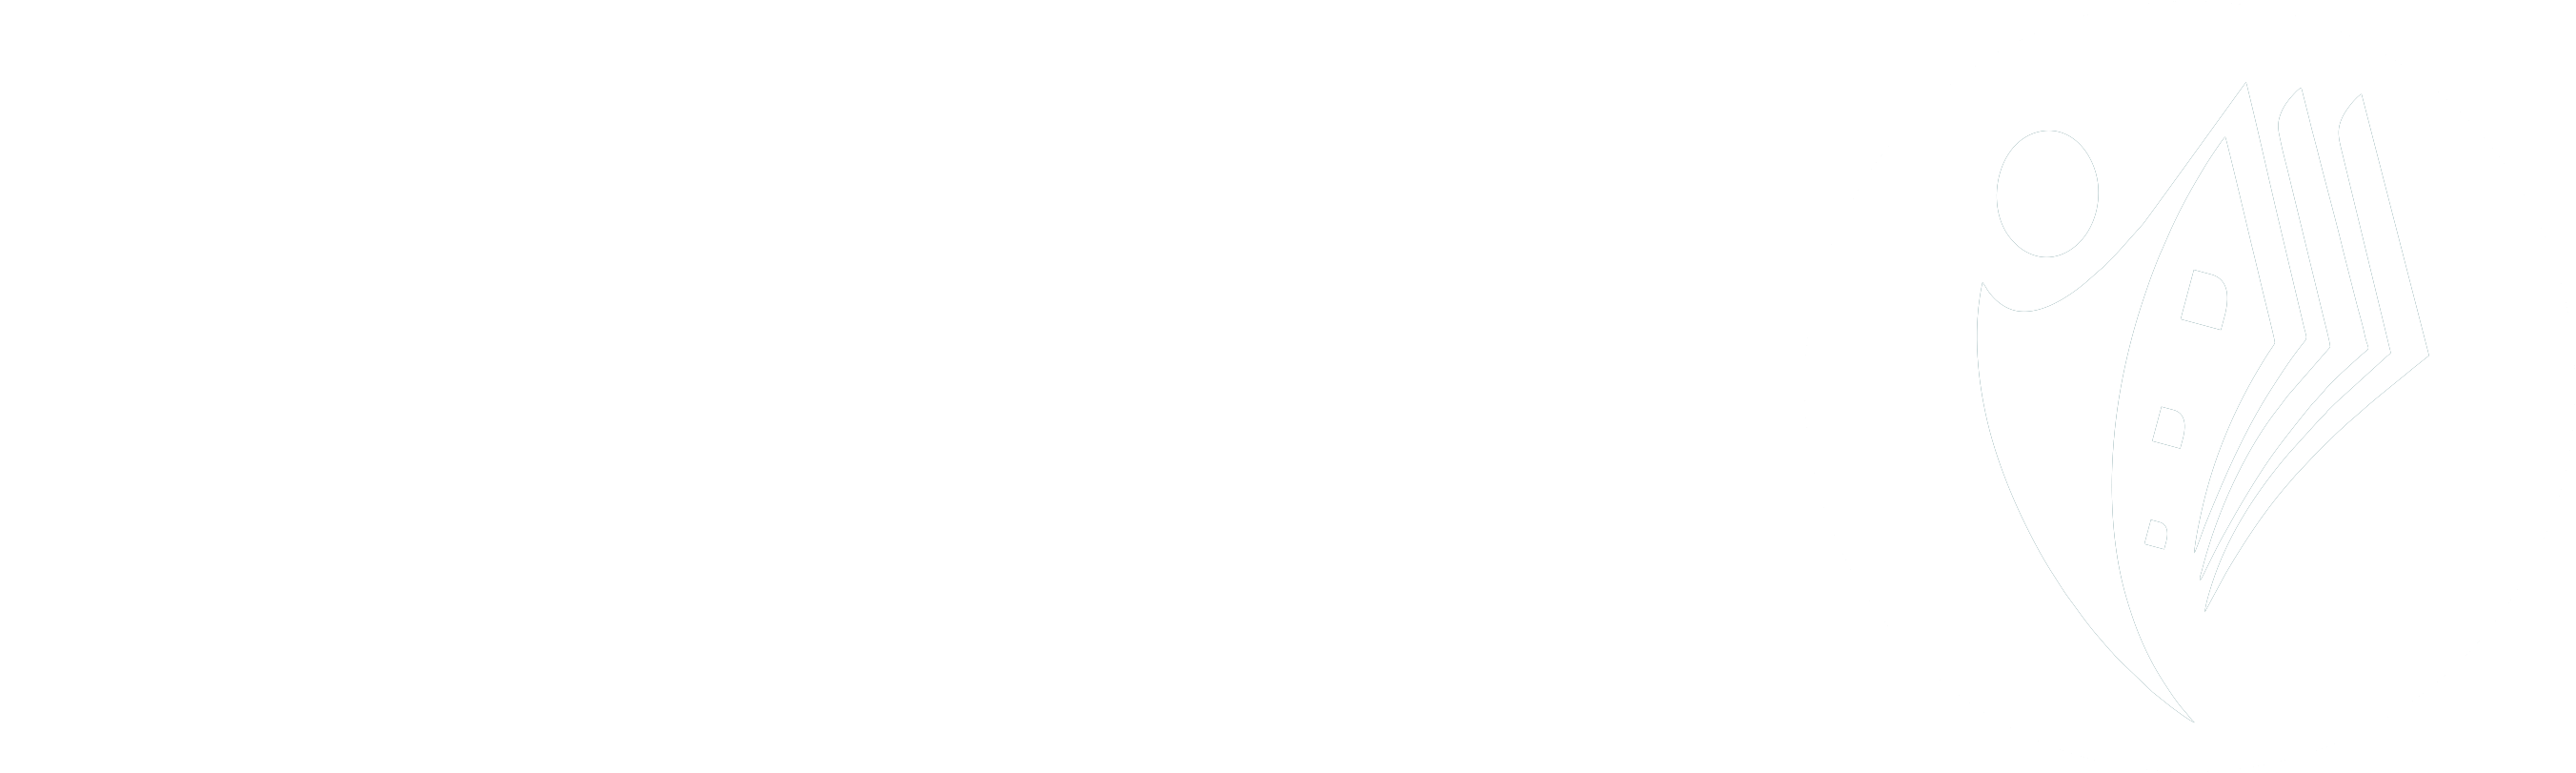 SharjBook Logo